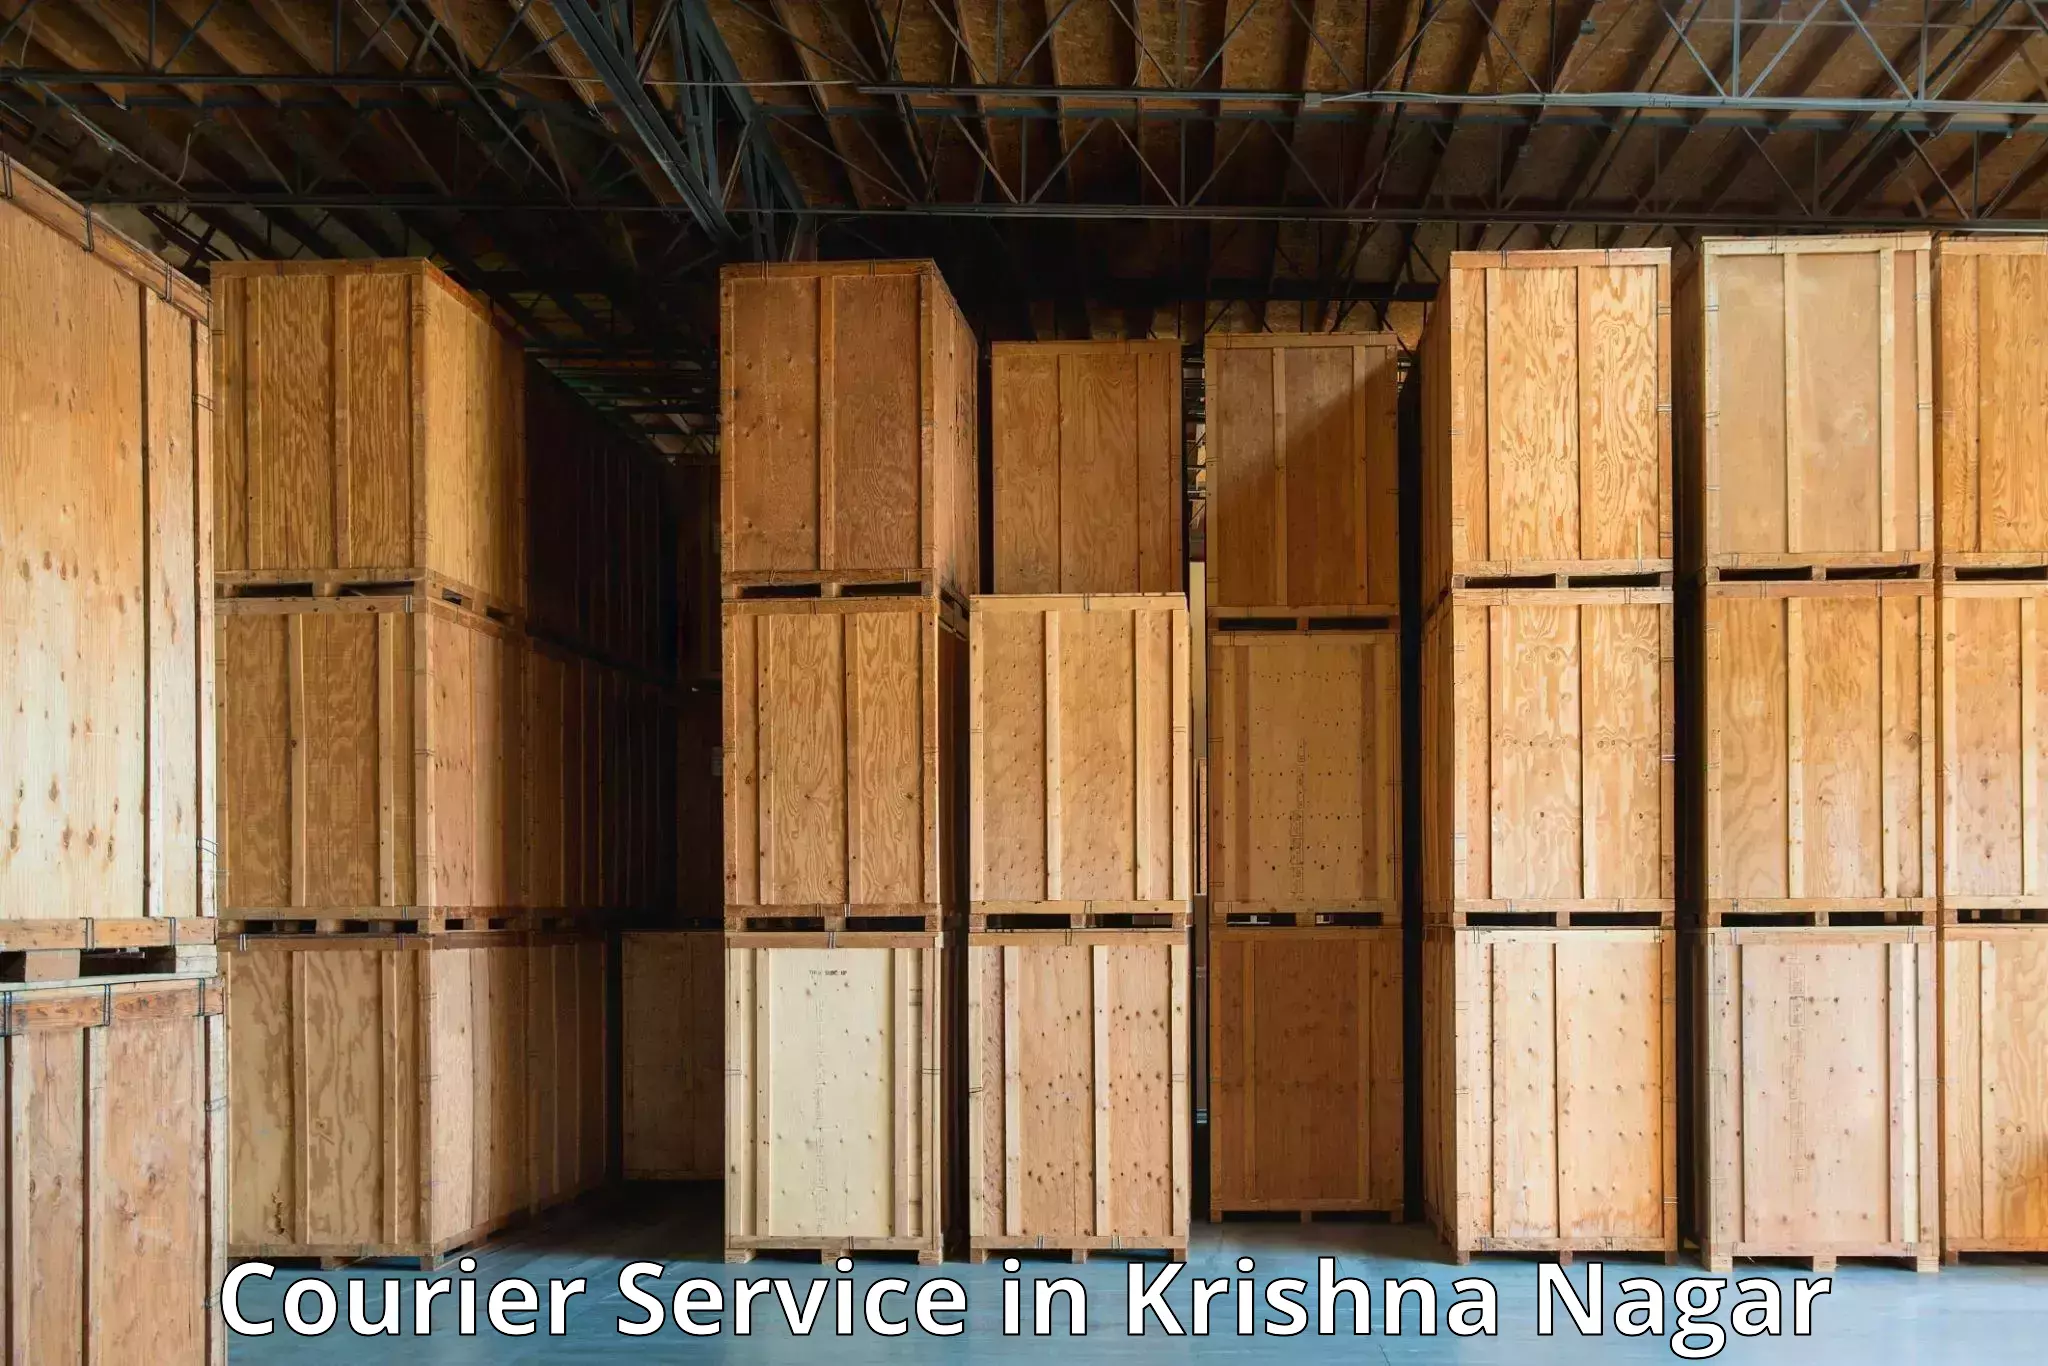 Doorstep delivery service in Krishna Nagar